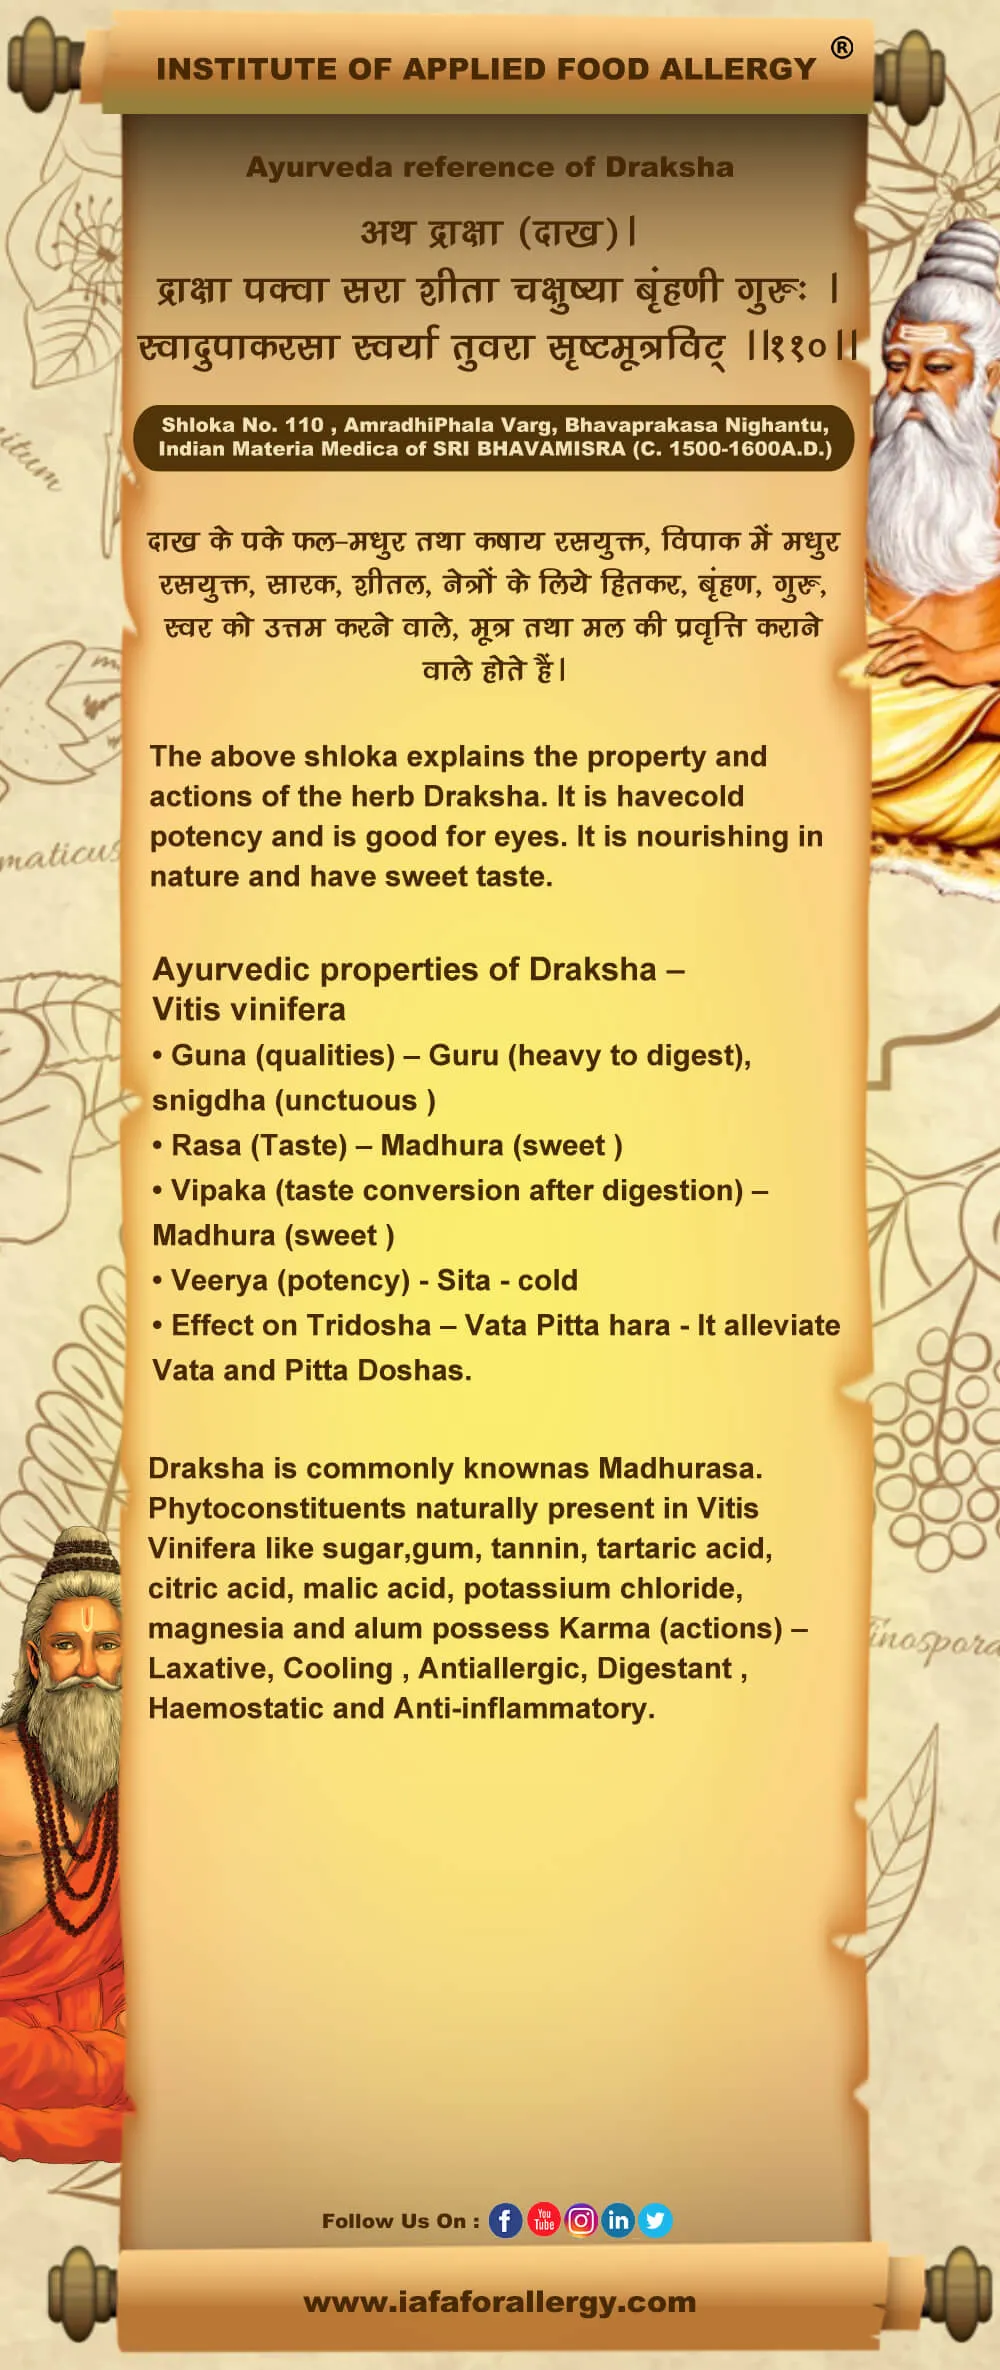 Ayurveda reference of Draksha – Vitis vinifera